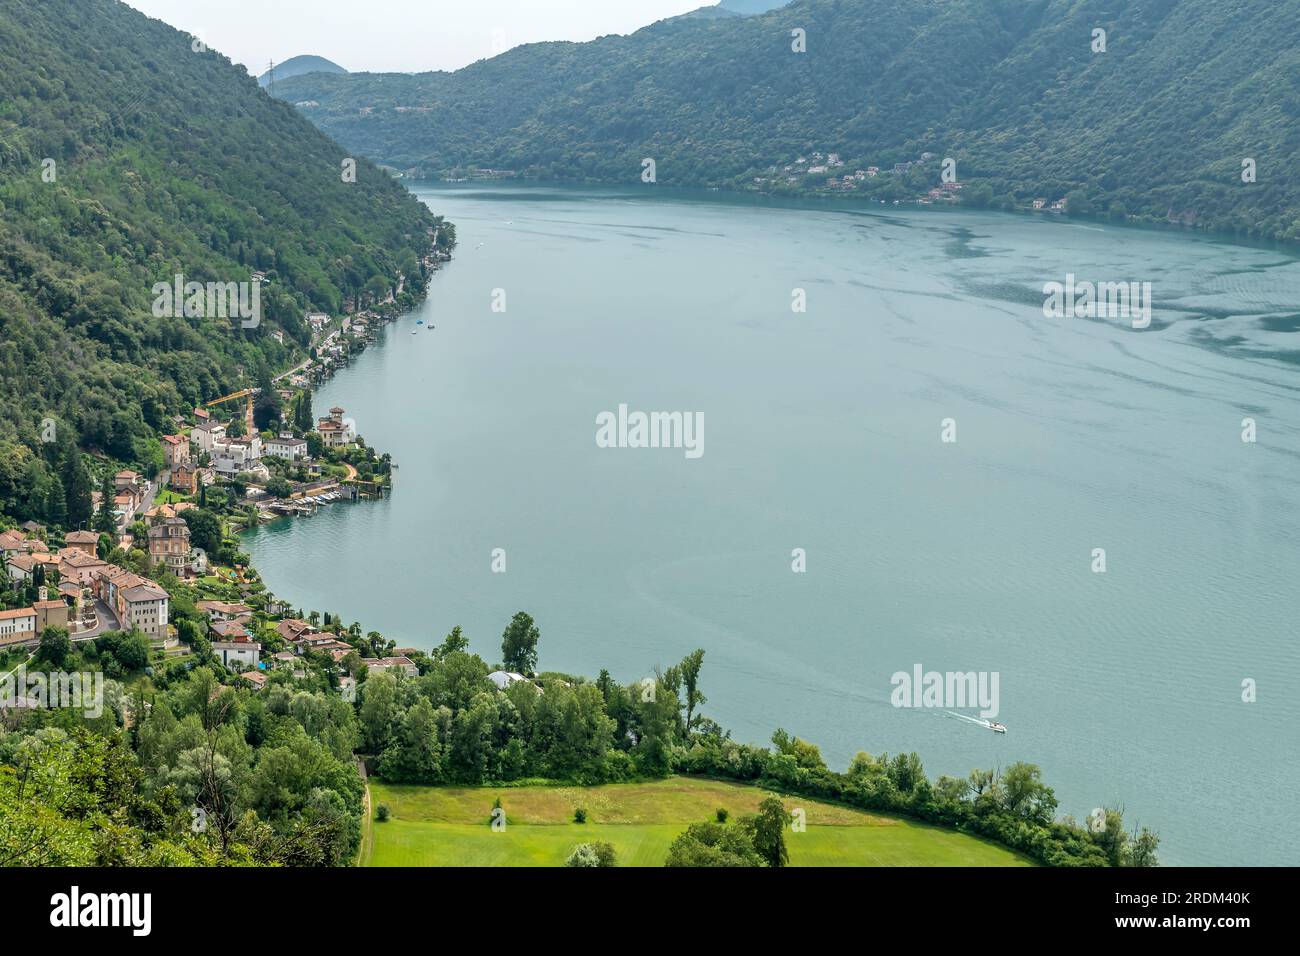 Vista aerea del Lago di Lugano, Svizzera, dal punto panoramico del Sasso delle parole Foto Stock